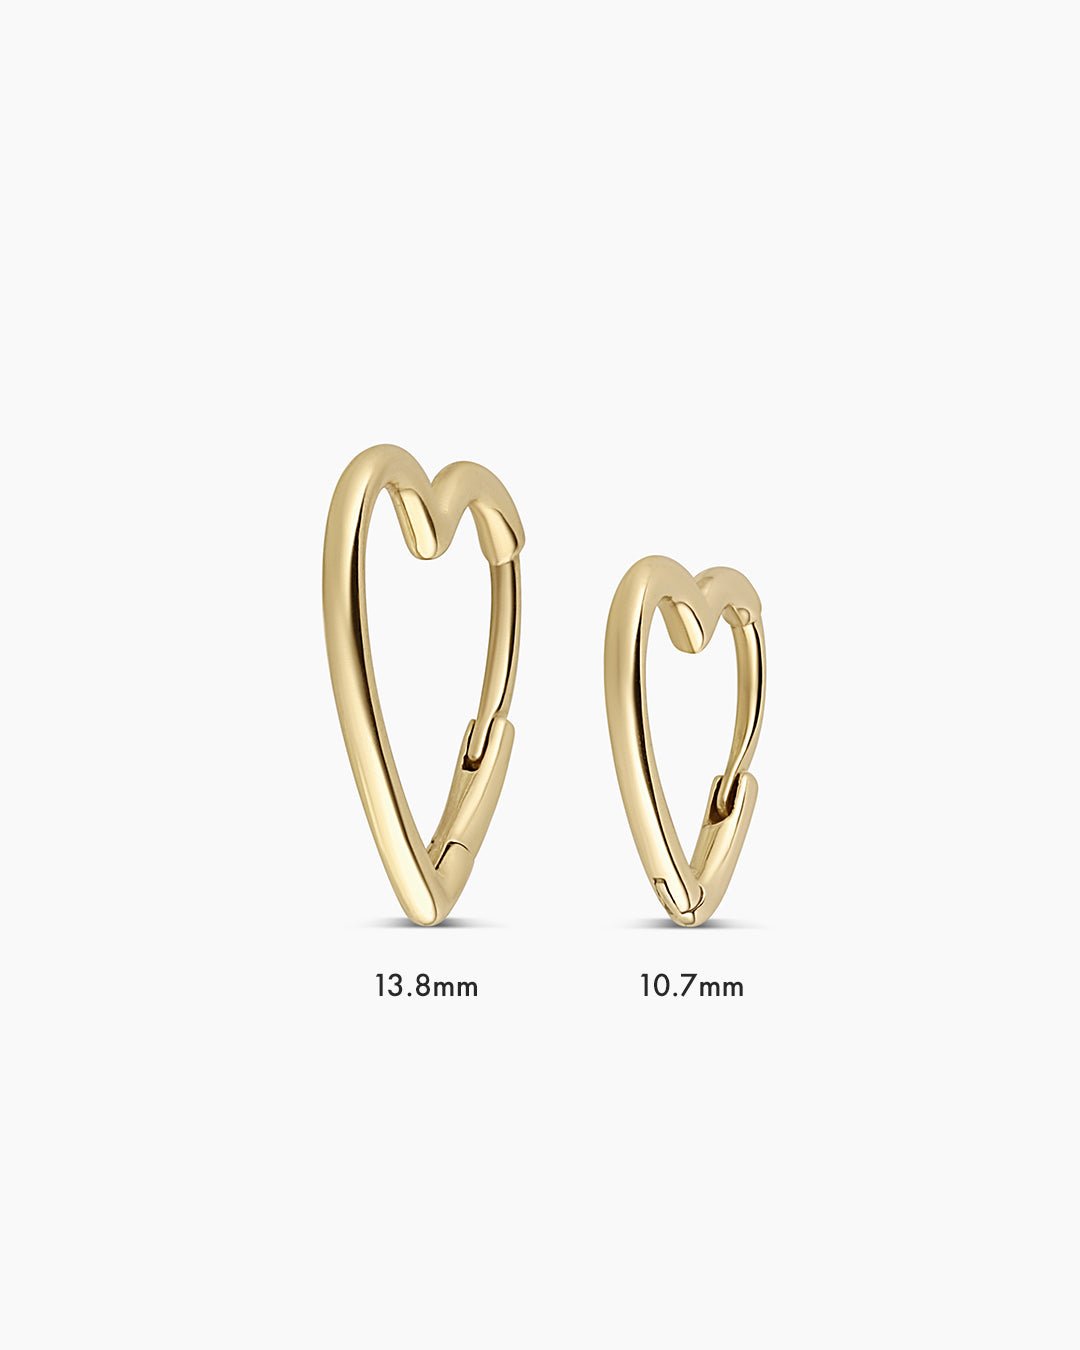 14k gold | gorjana jewelry | 14k Gold Open Heart Huggie | Heart shaped hoop | heart shaped earring, Single